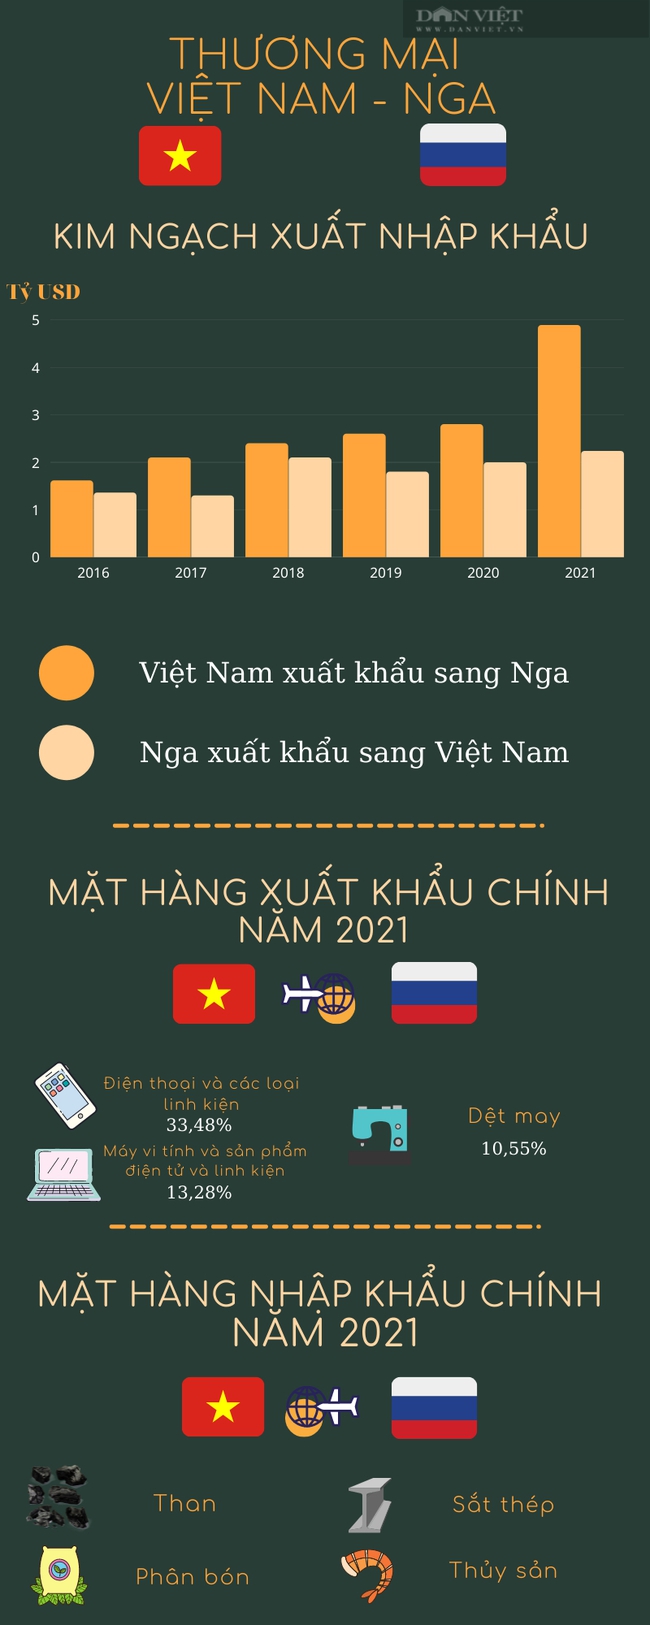 Toàn cảnh thương mại Việt Nam - Nga 5 năm qua - Ảnh 1.